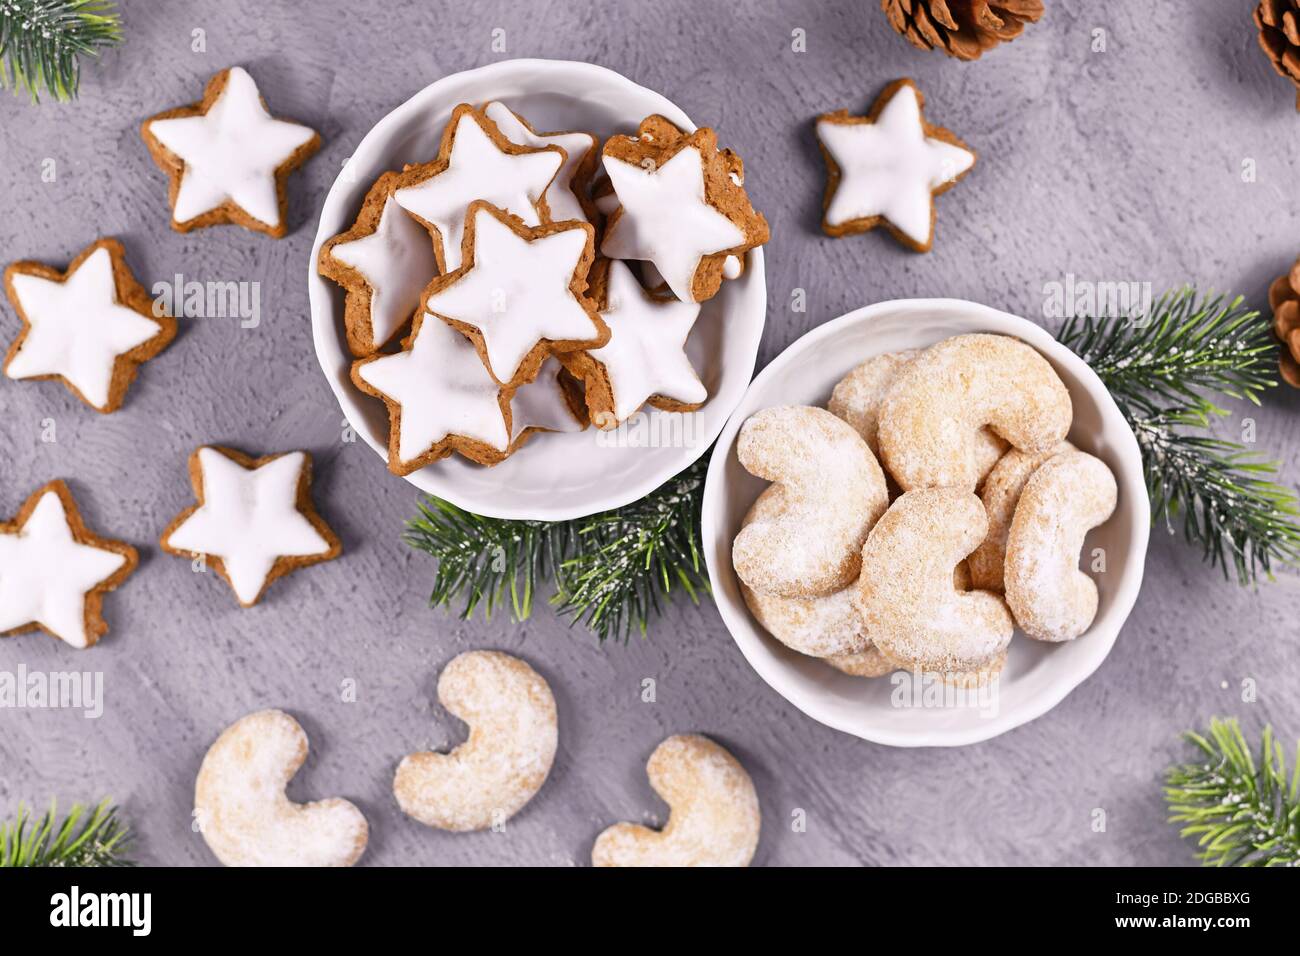 Schalen mit traditionellen deutschen und österreichischen Weihnachtsplätzchen, eine gefüllt mit Zimt-Stern-Kekse, die andere mit crecent geformten Mandelgebäck Stockfoto